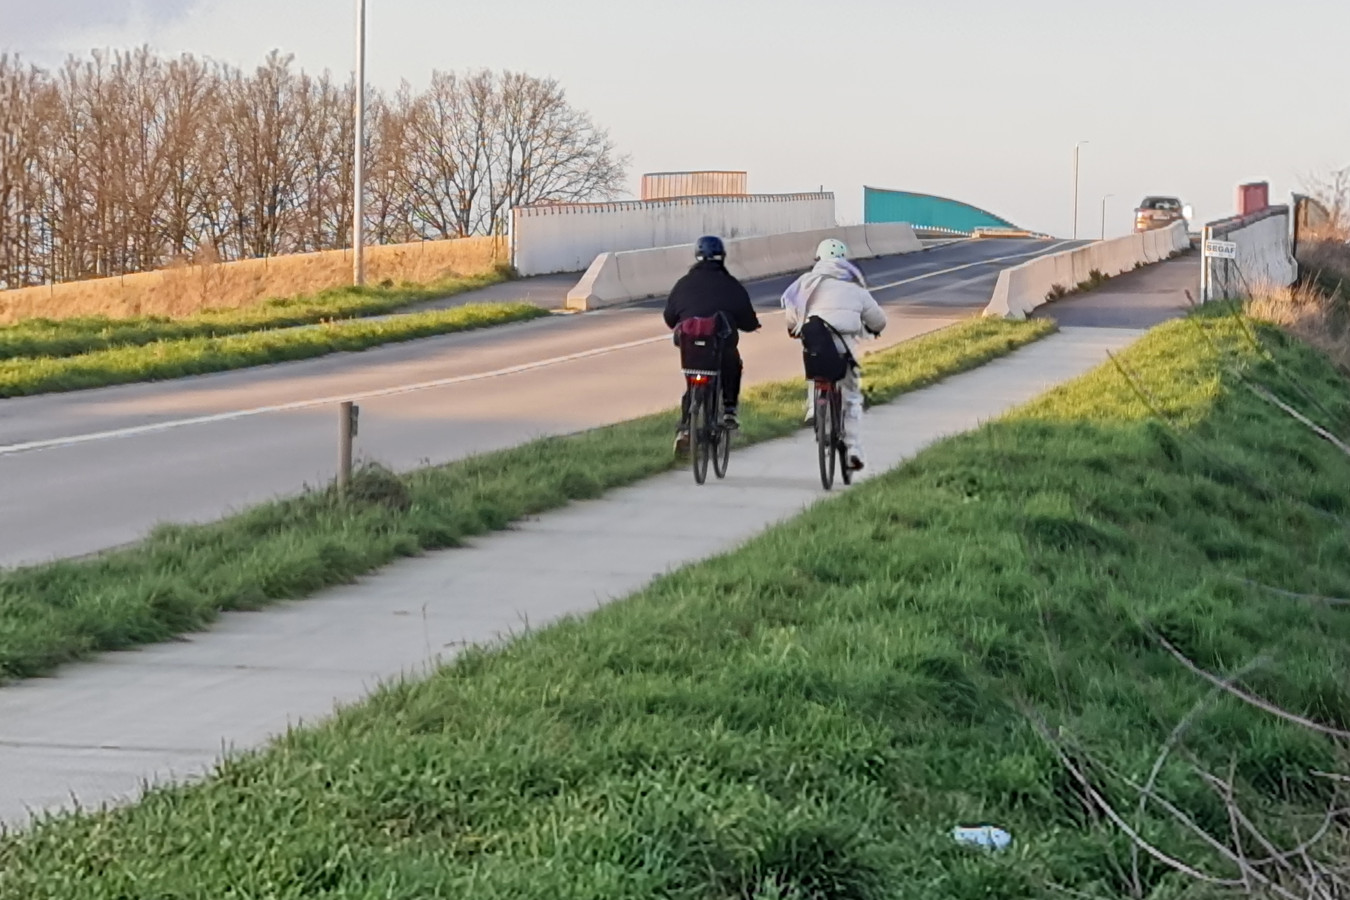 De gemeente geeft een positief advies over de voorlopige oplevering van het fietspad tussen de bebouwde kom van Vertrijk en Willebringen.